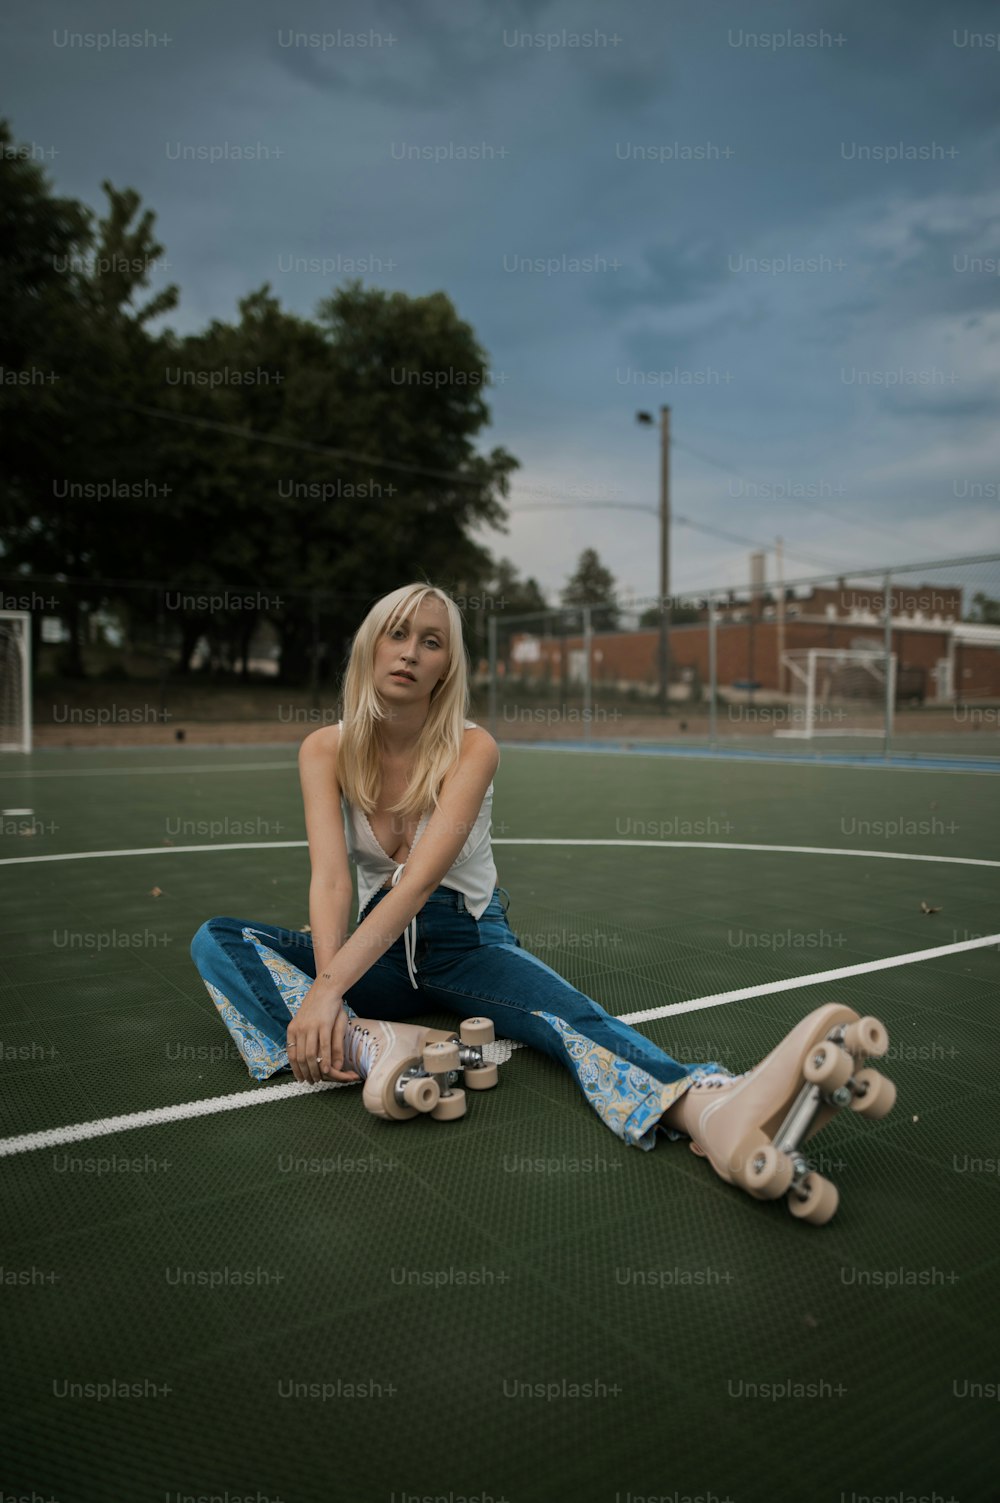 Eine Frau, die mit ihrem Skateboard auf dem Boden sitzt